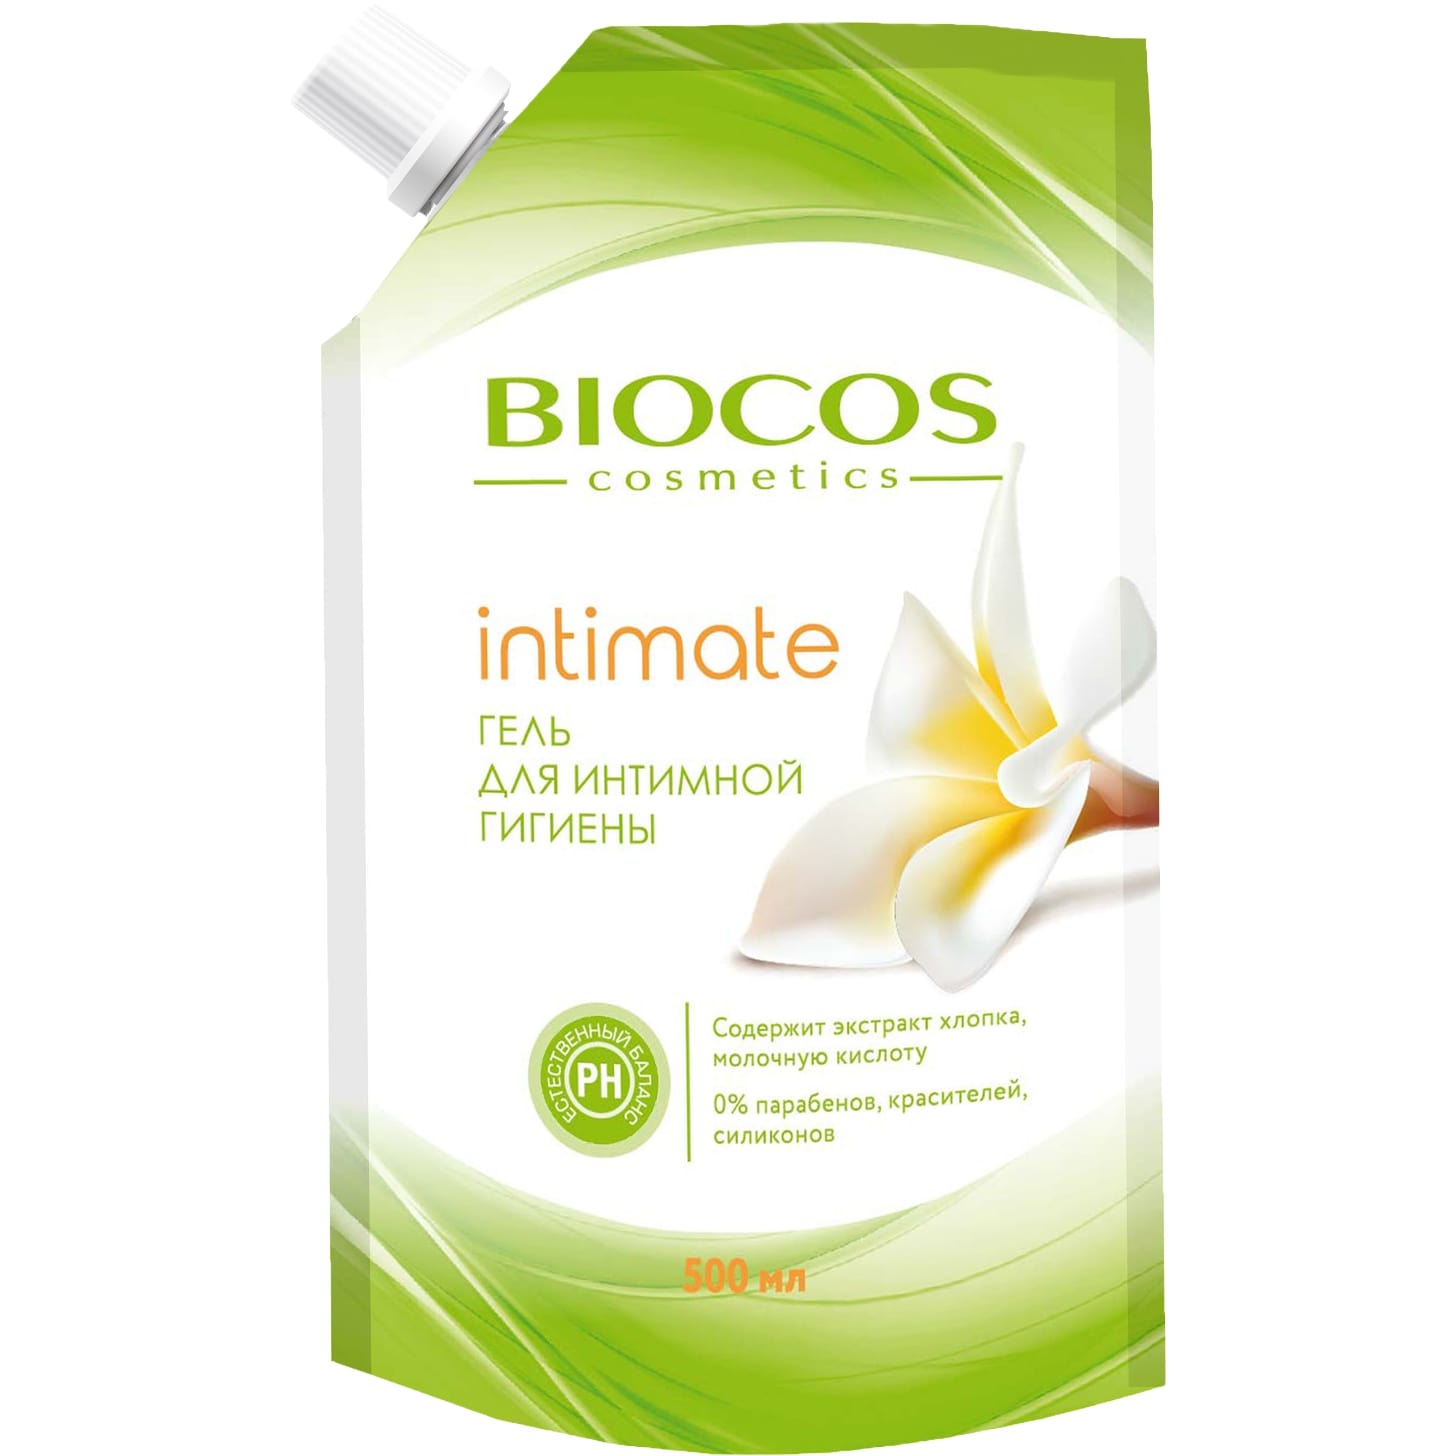 Гель для интимной гигиены BioCos intimate с экстрактом хлопка и молочной кислотой 500 мл гель для интимной гигиены nidra refreshing milk intimate wash 500 мл